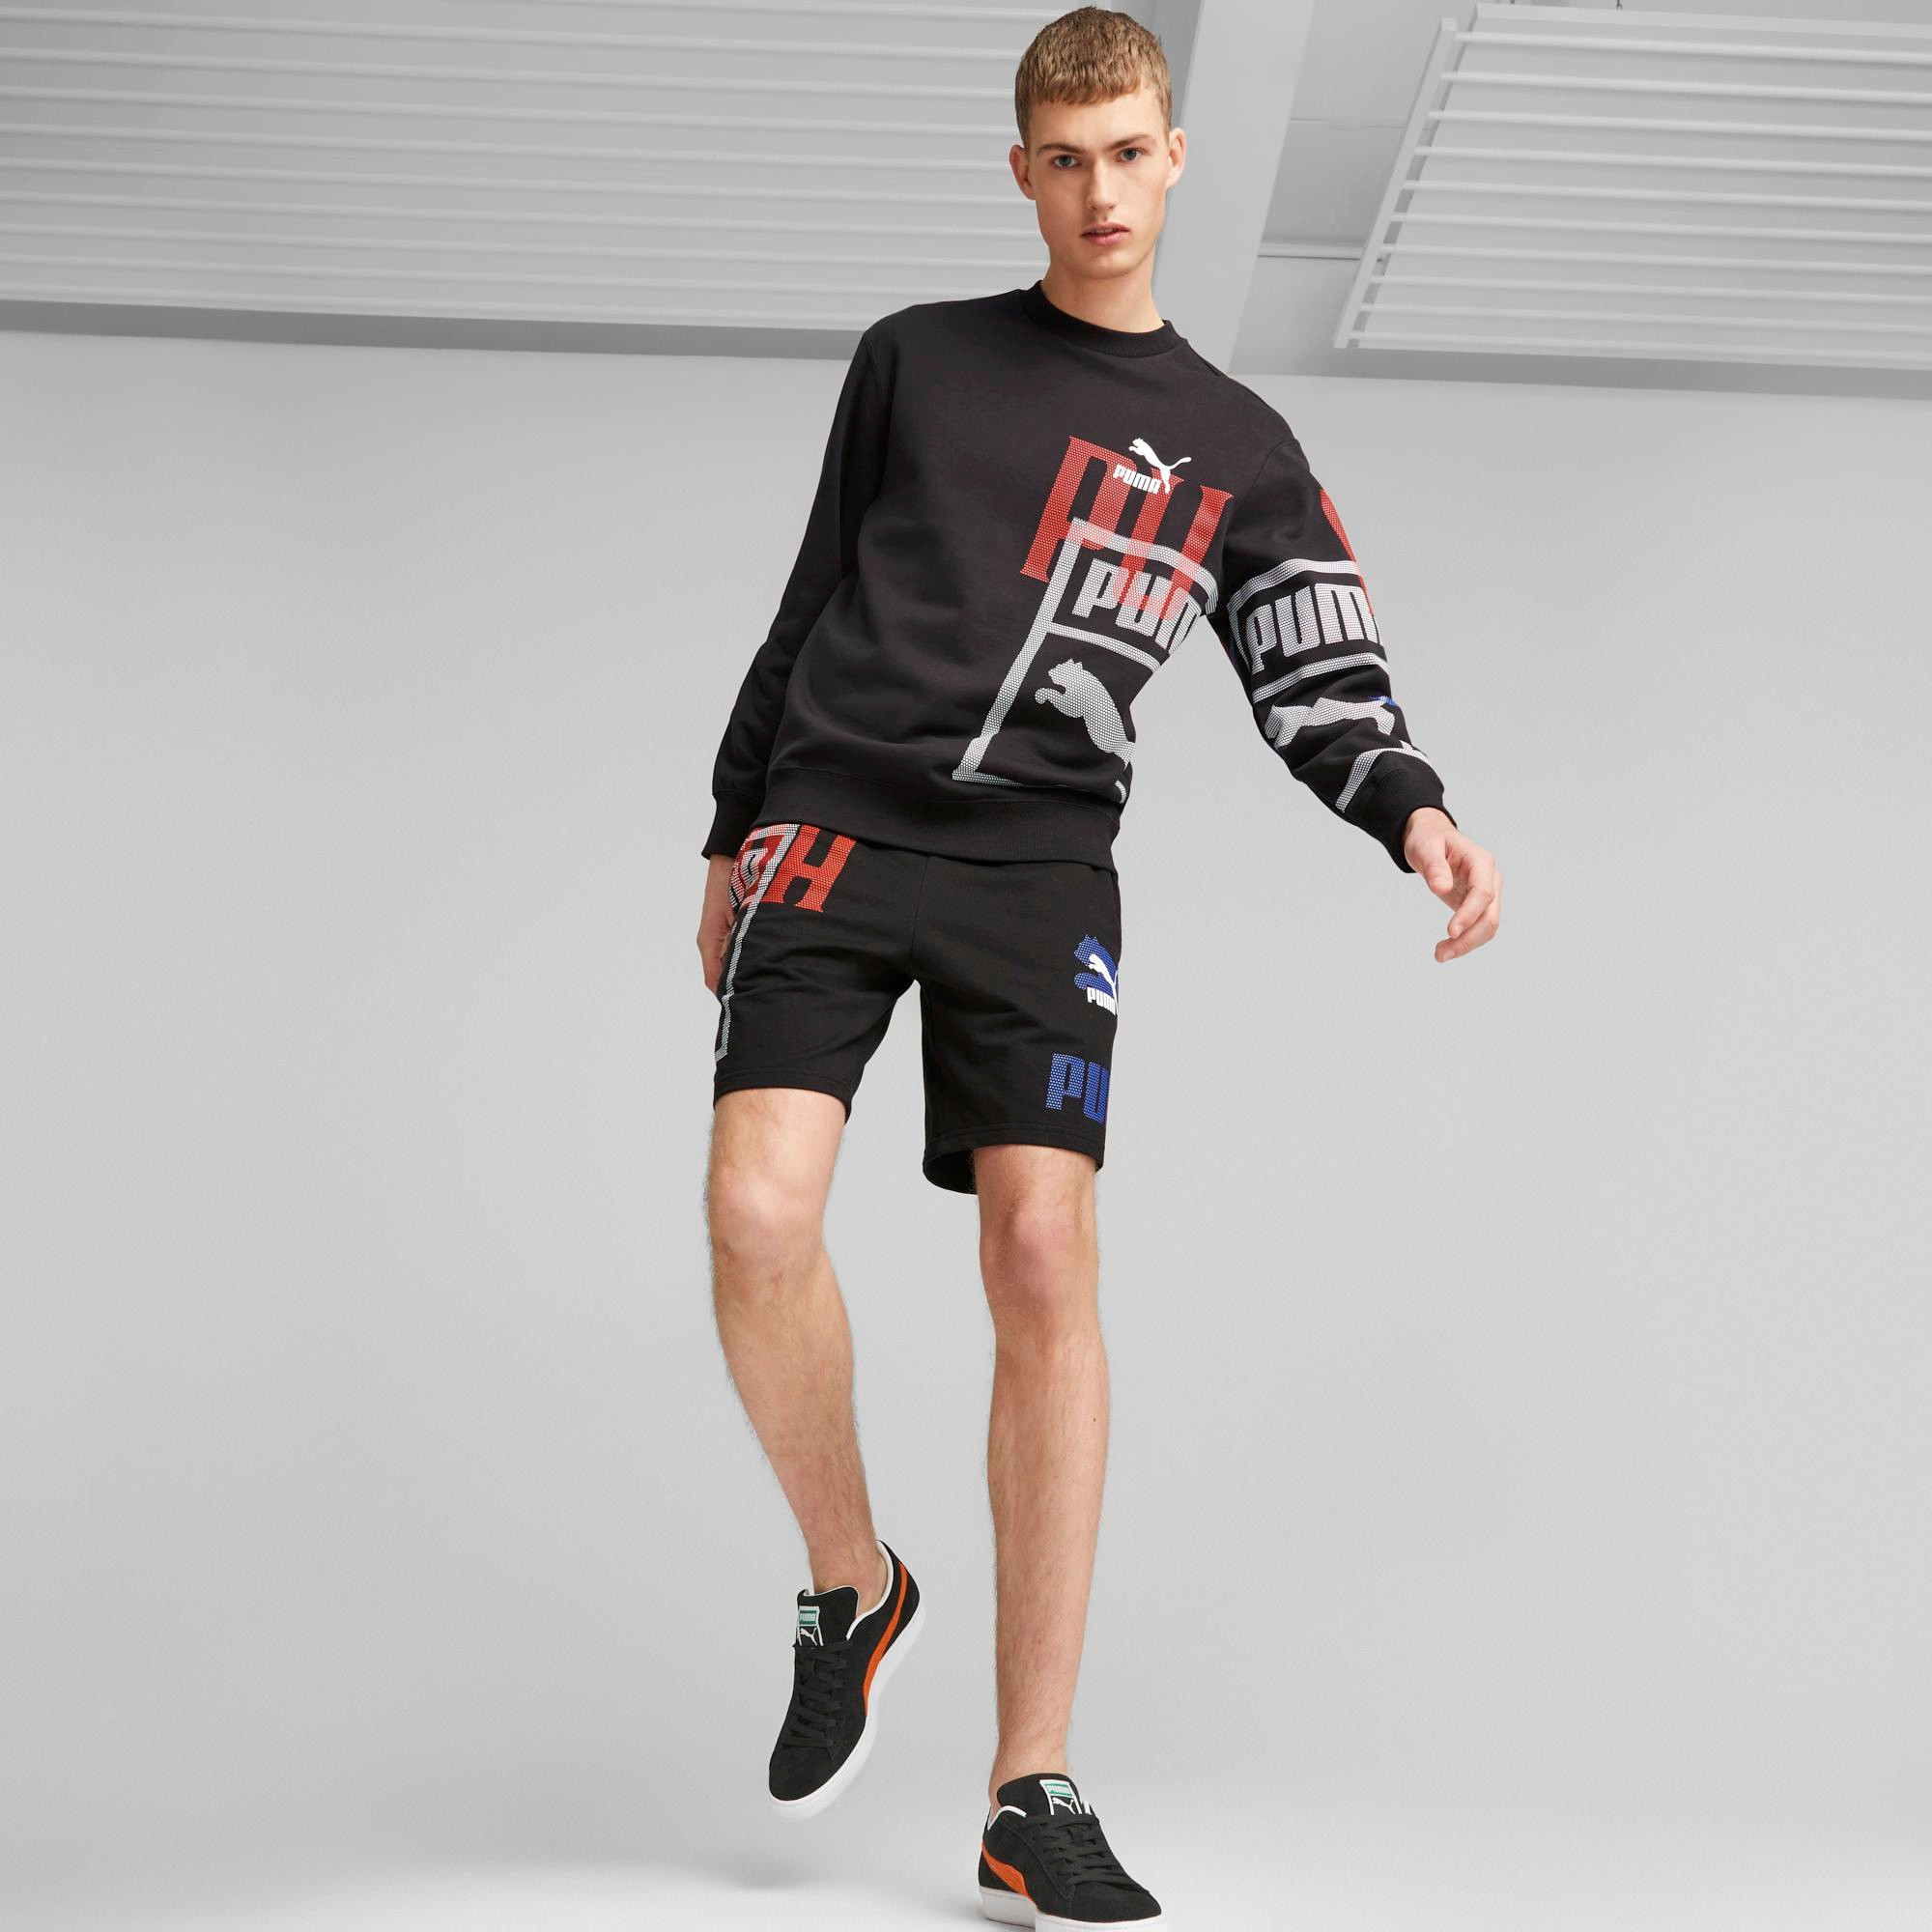 Puma - Shorts with logo, Black, large image number 3